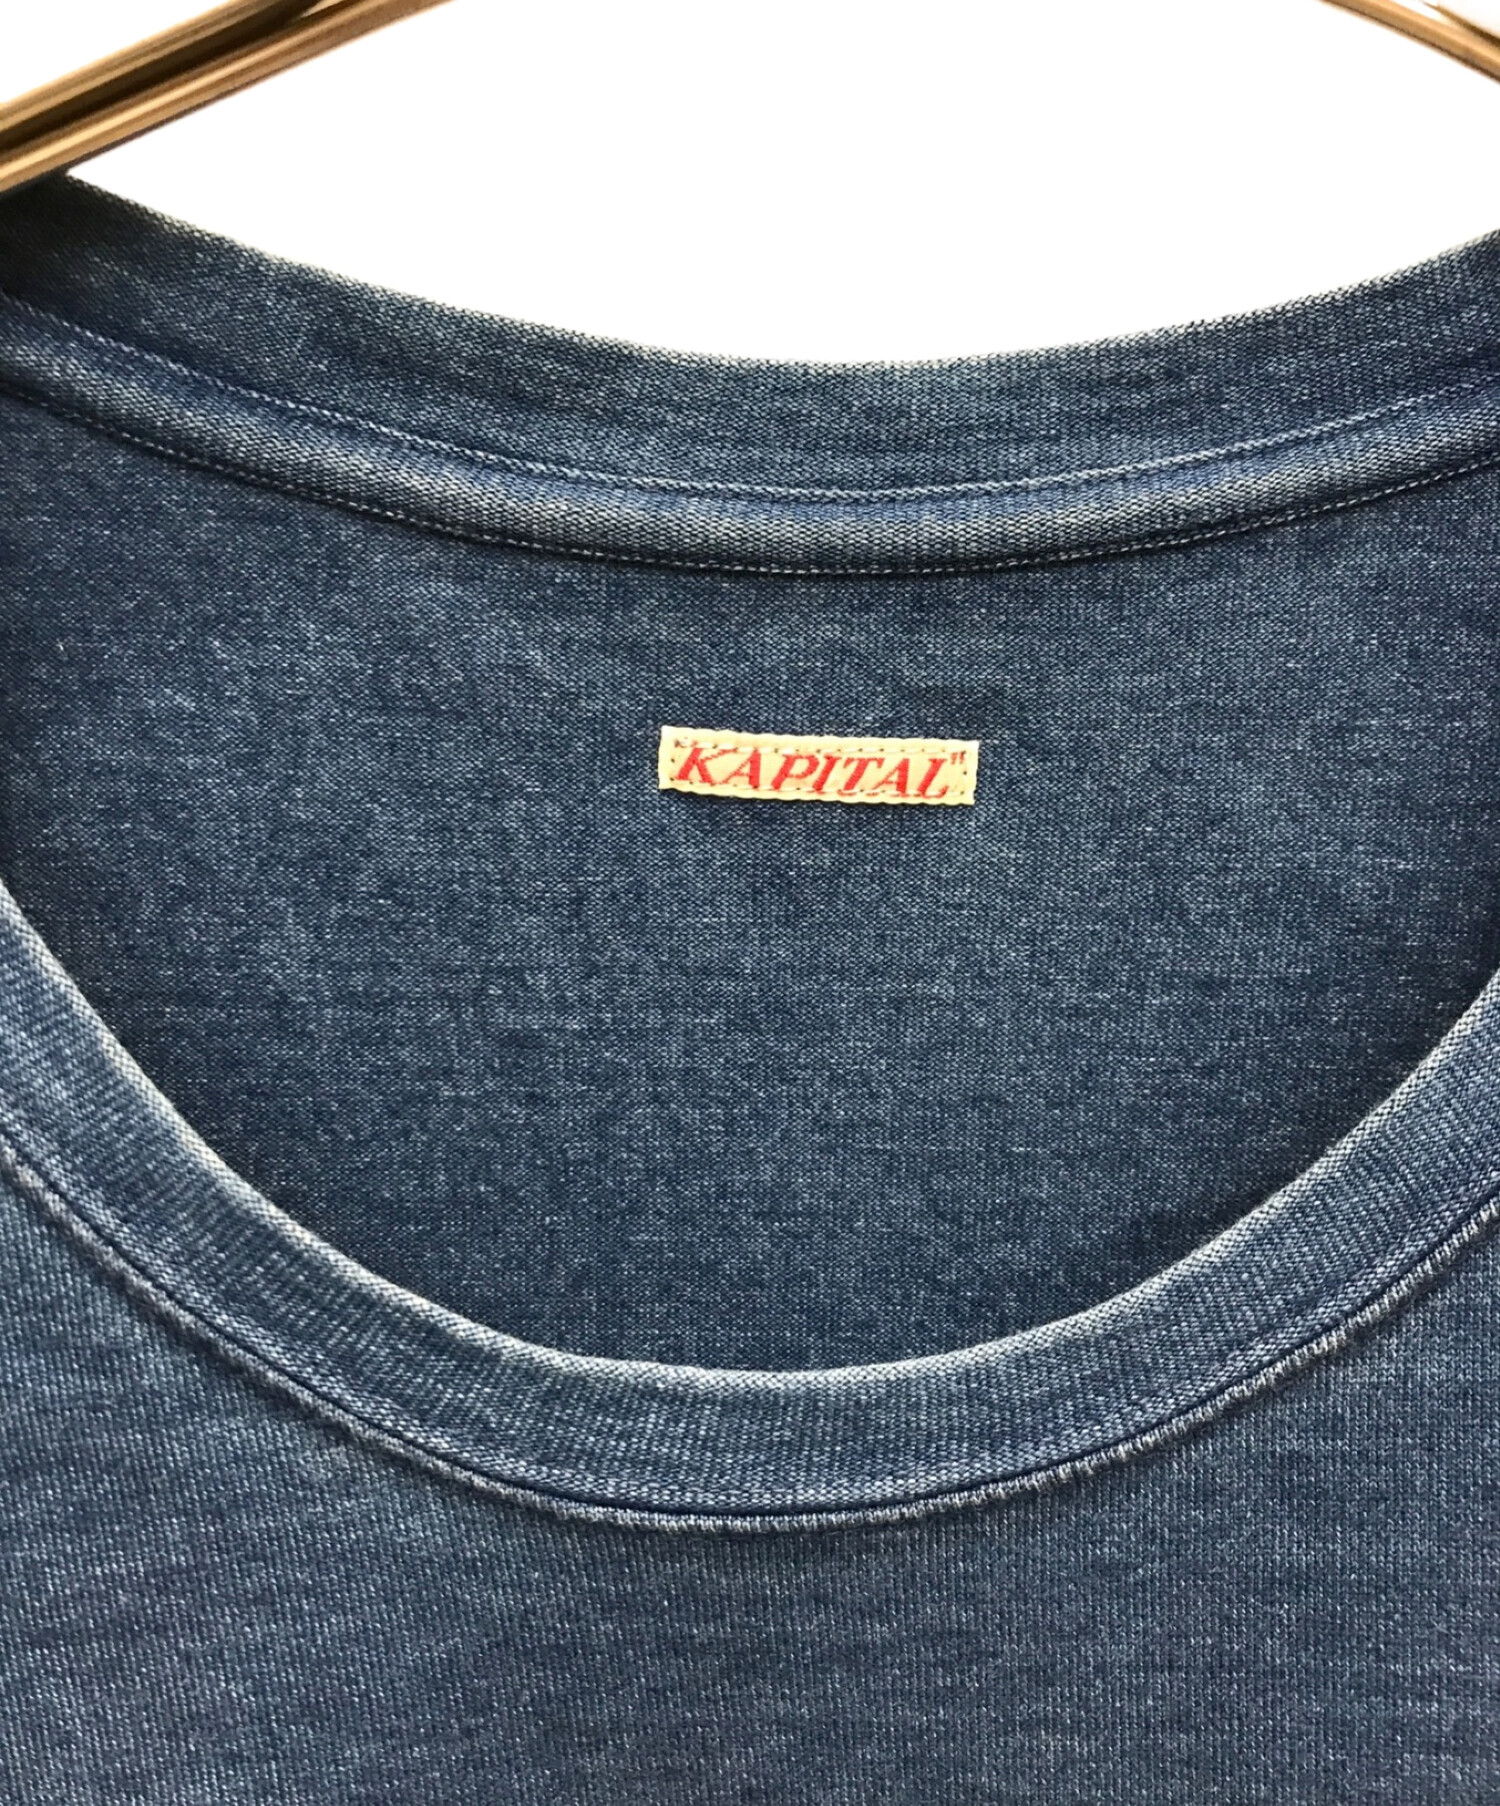 KAPITAL (キャピタル) リネンパッチワークインディゴ染Tシャツ インディゴ サイズ:L